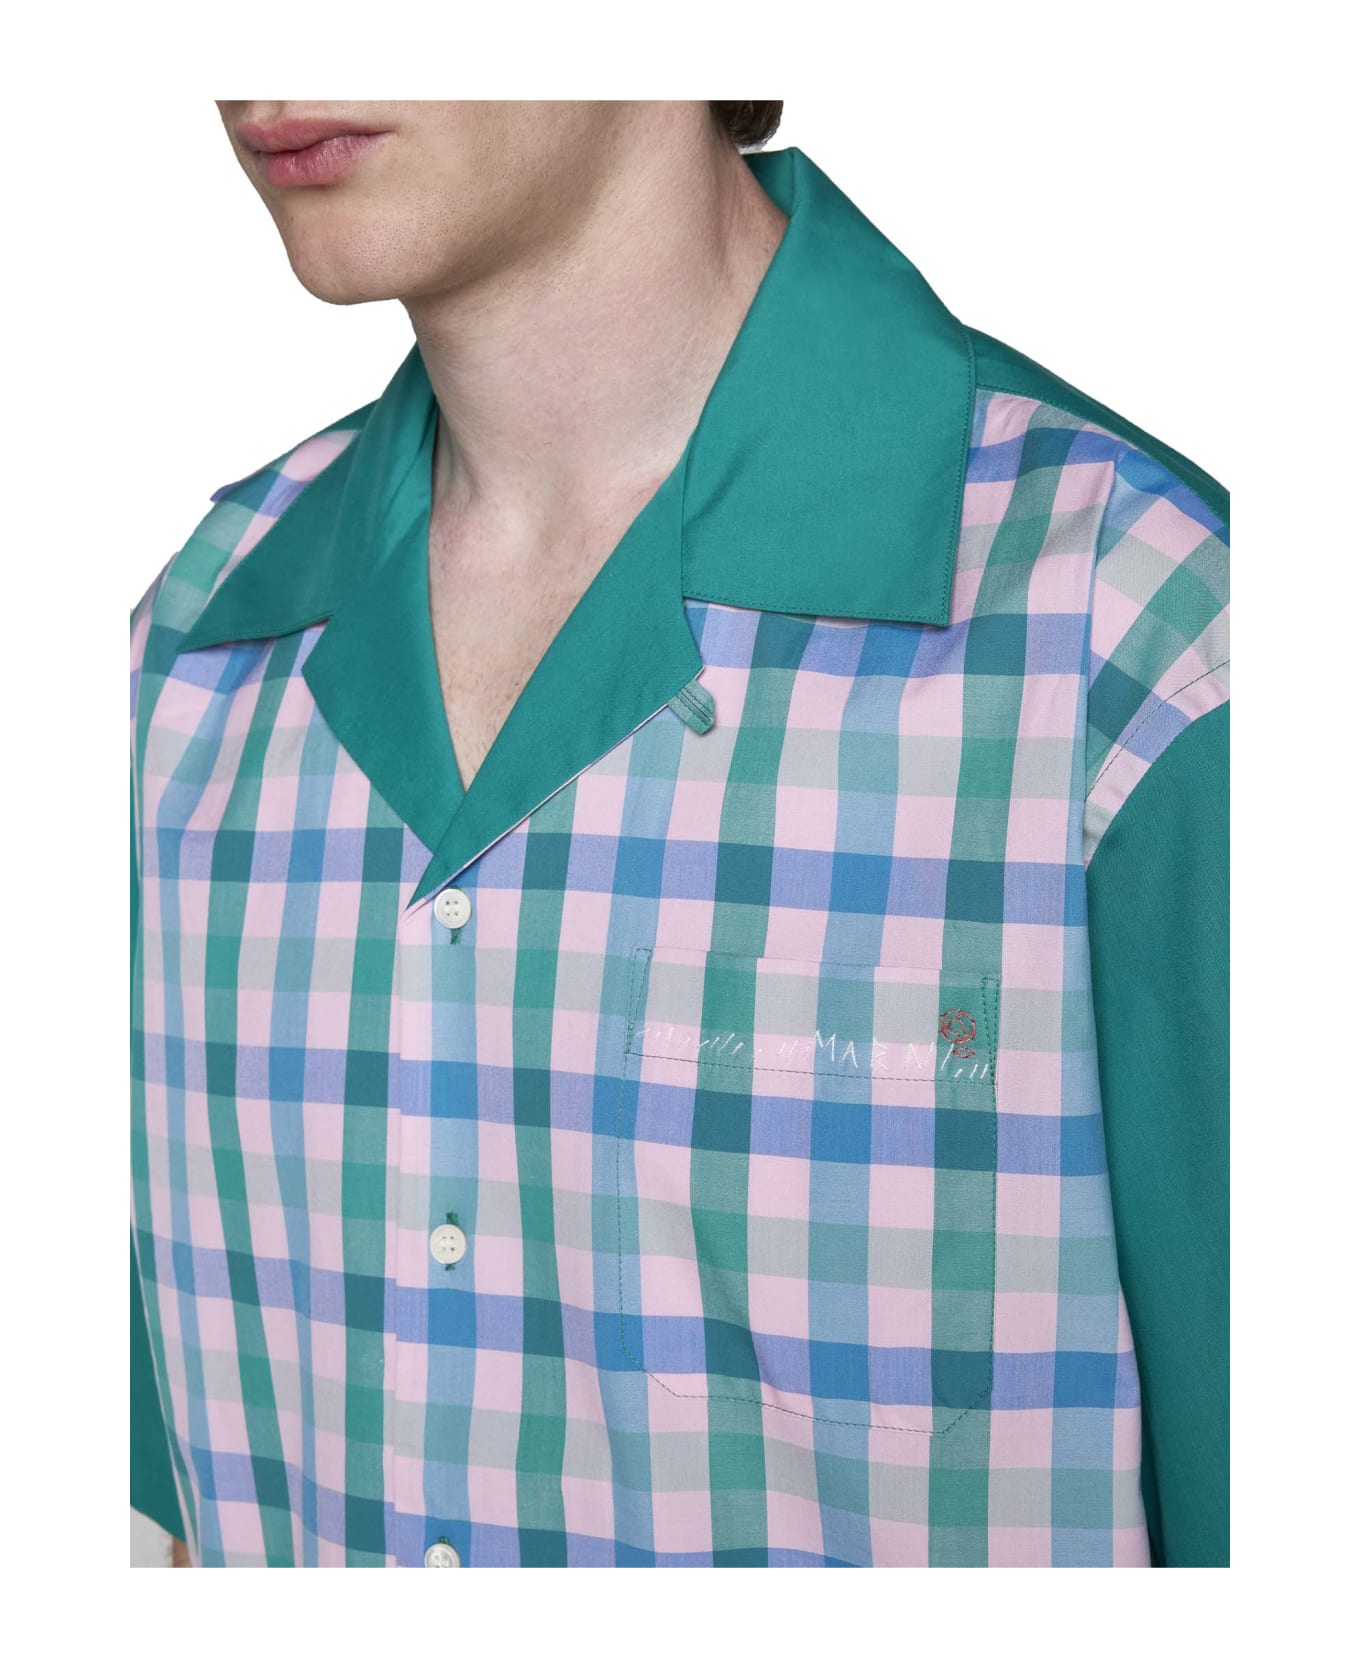 Marni Shirt - Green